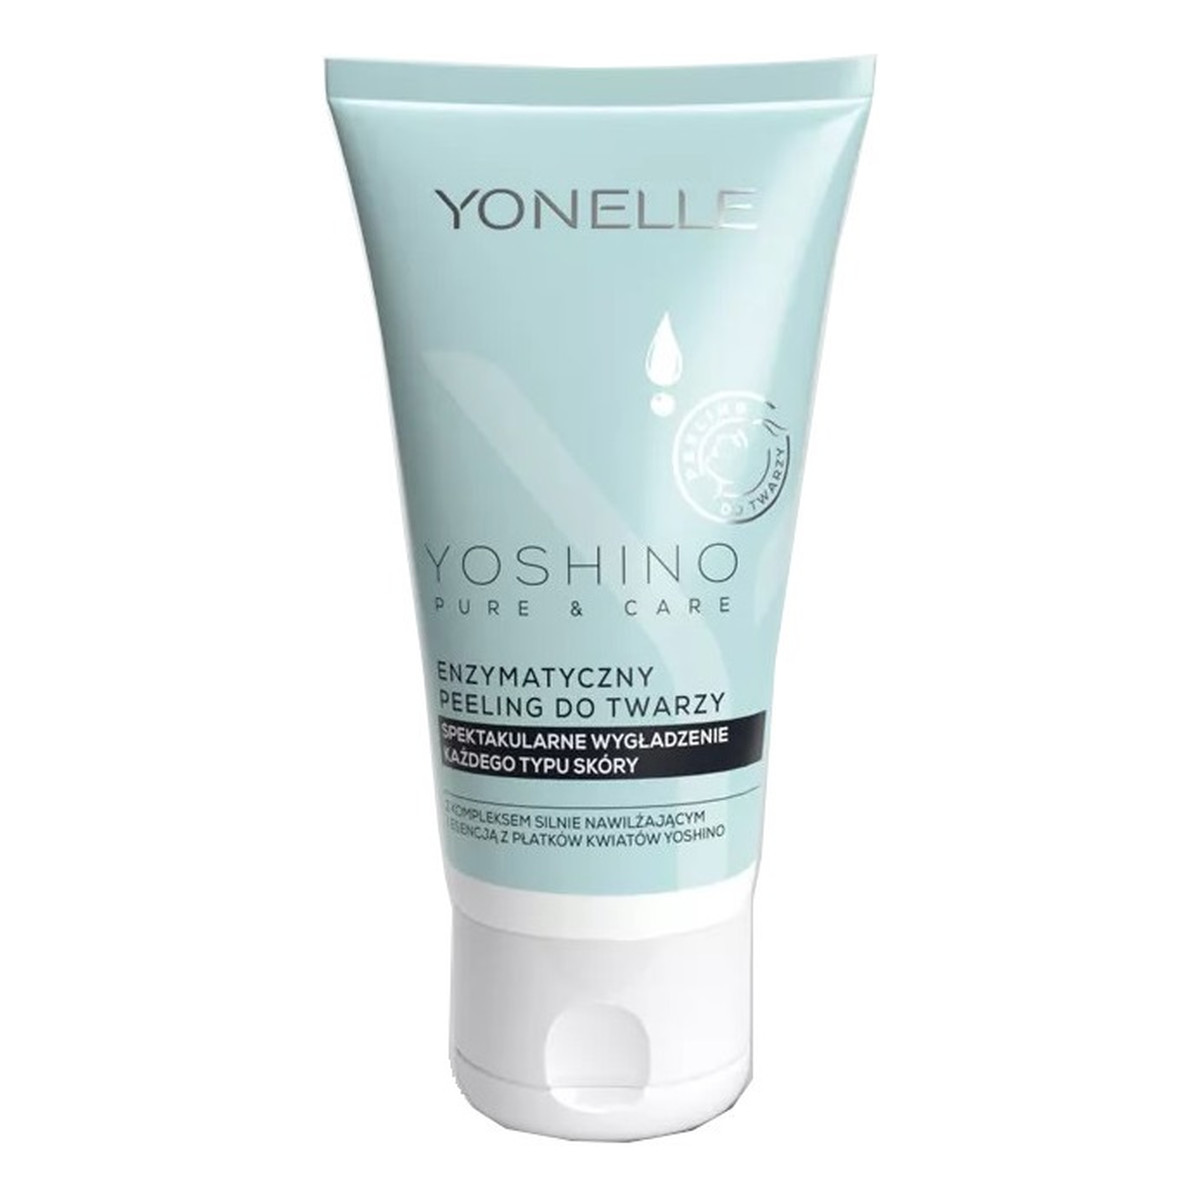 Yonelle Yoshino pure & care enzymatyczny peeling do twarzy 55ml